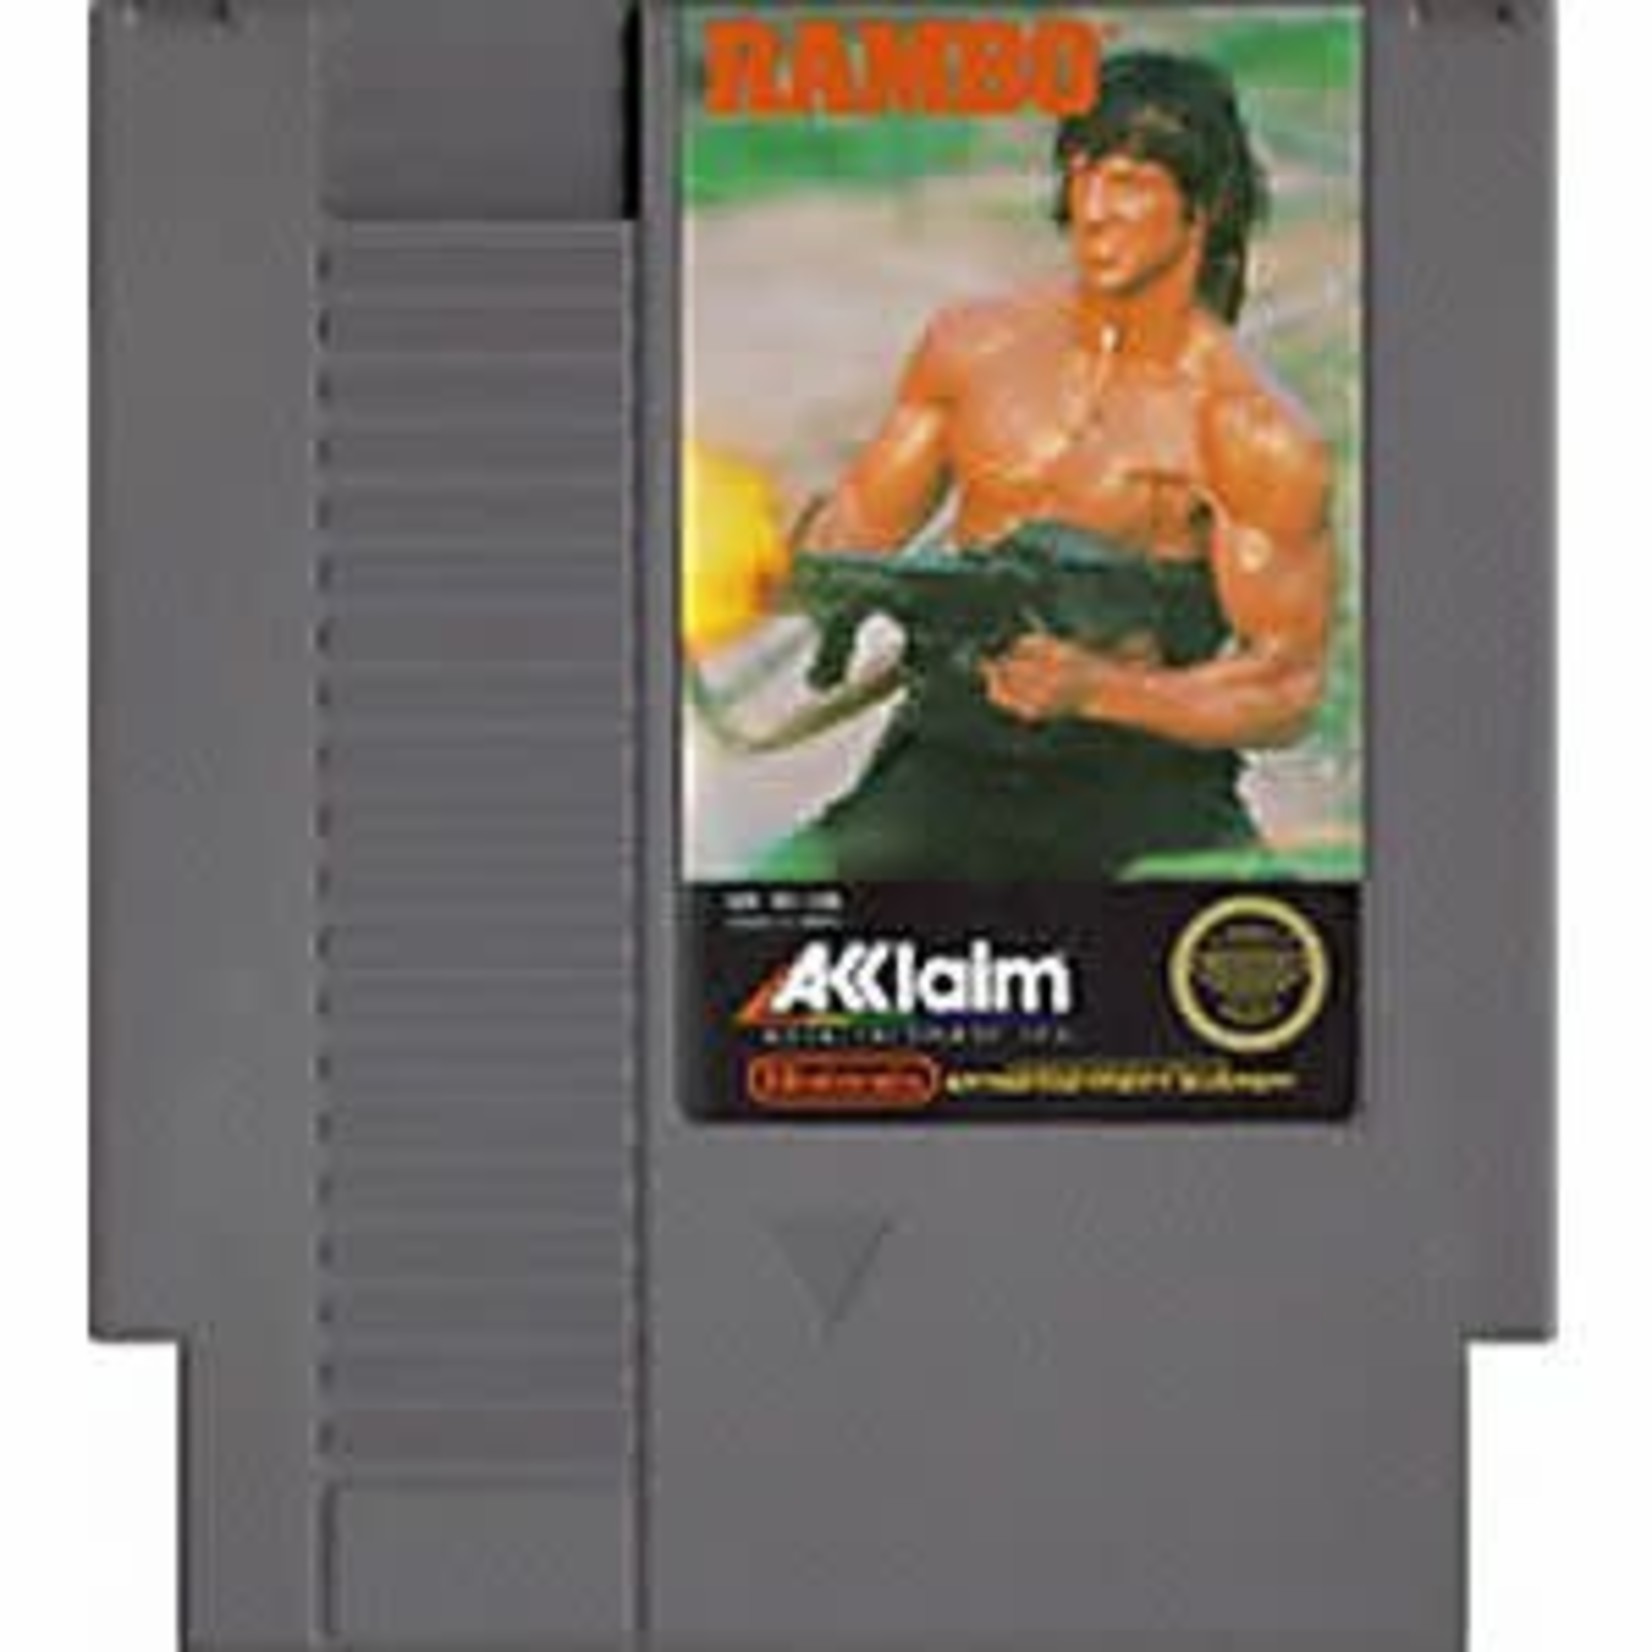 nesu-Rambo (cartridge)